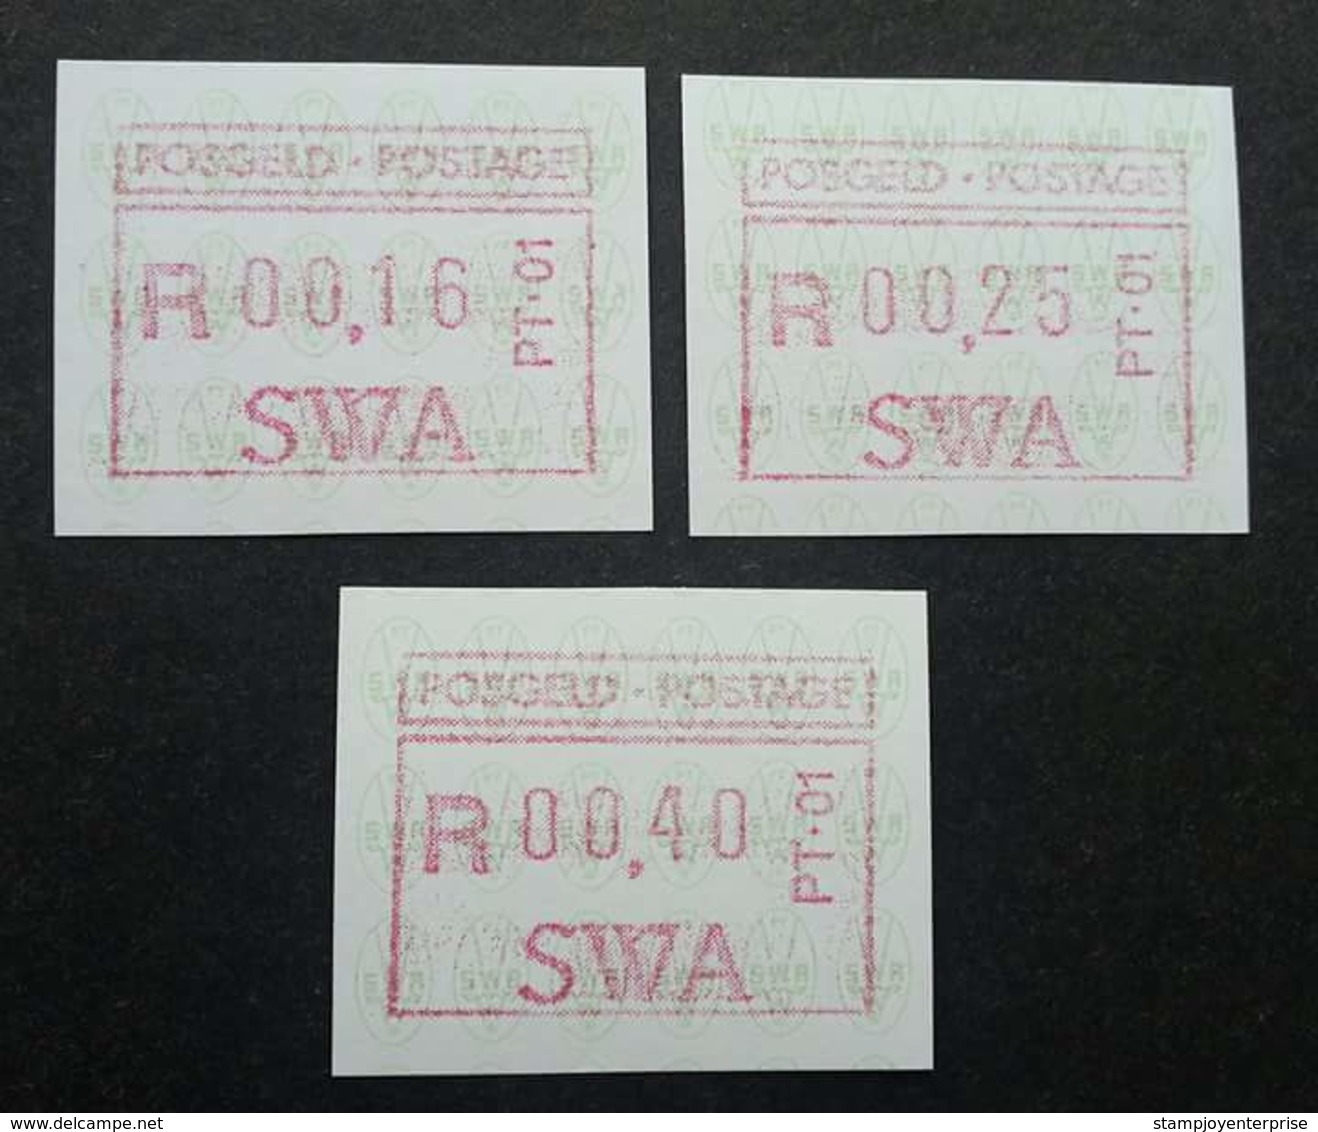 South Africa SWA 1988 ATM (frama Label Stamp) MNH - Vignettes D'affranchissement (Frama)